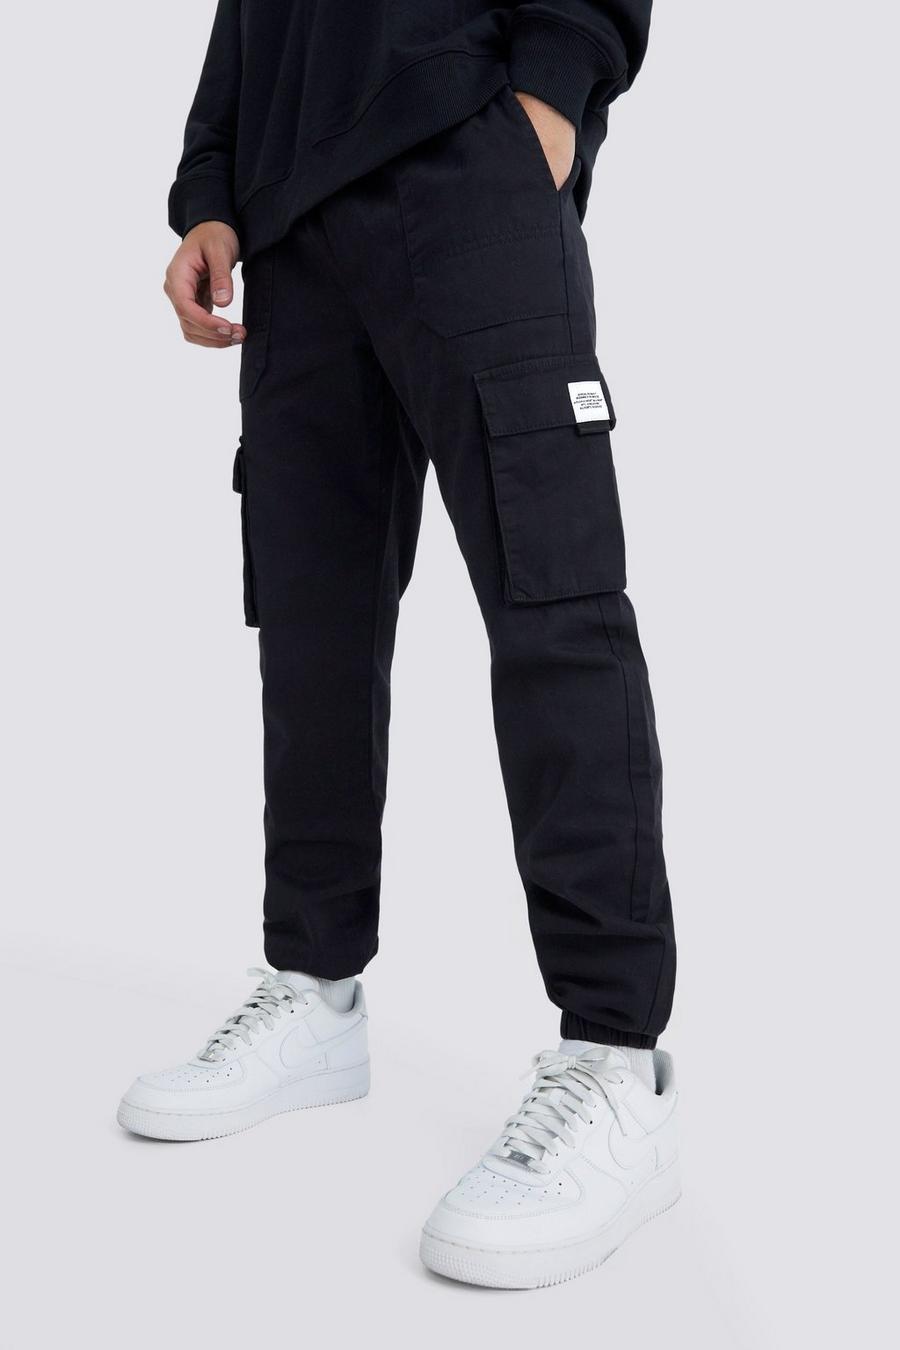 Pantalón deportivo cargo ajustado con cintura elástica y hebilla, Black